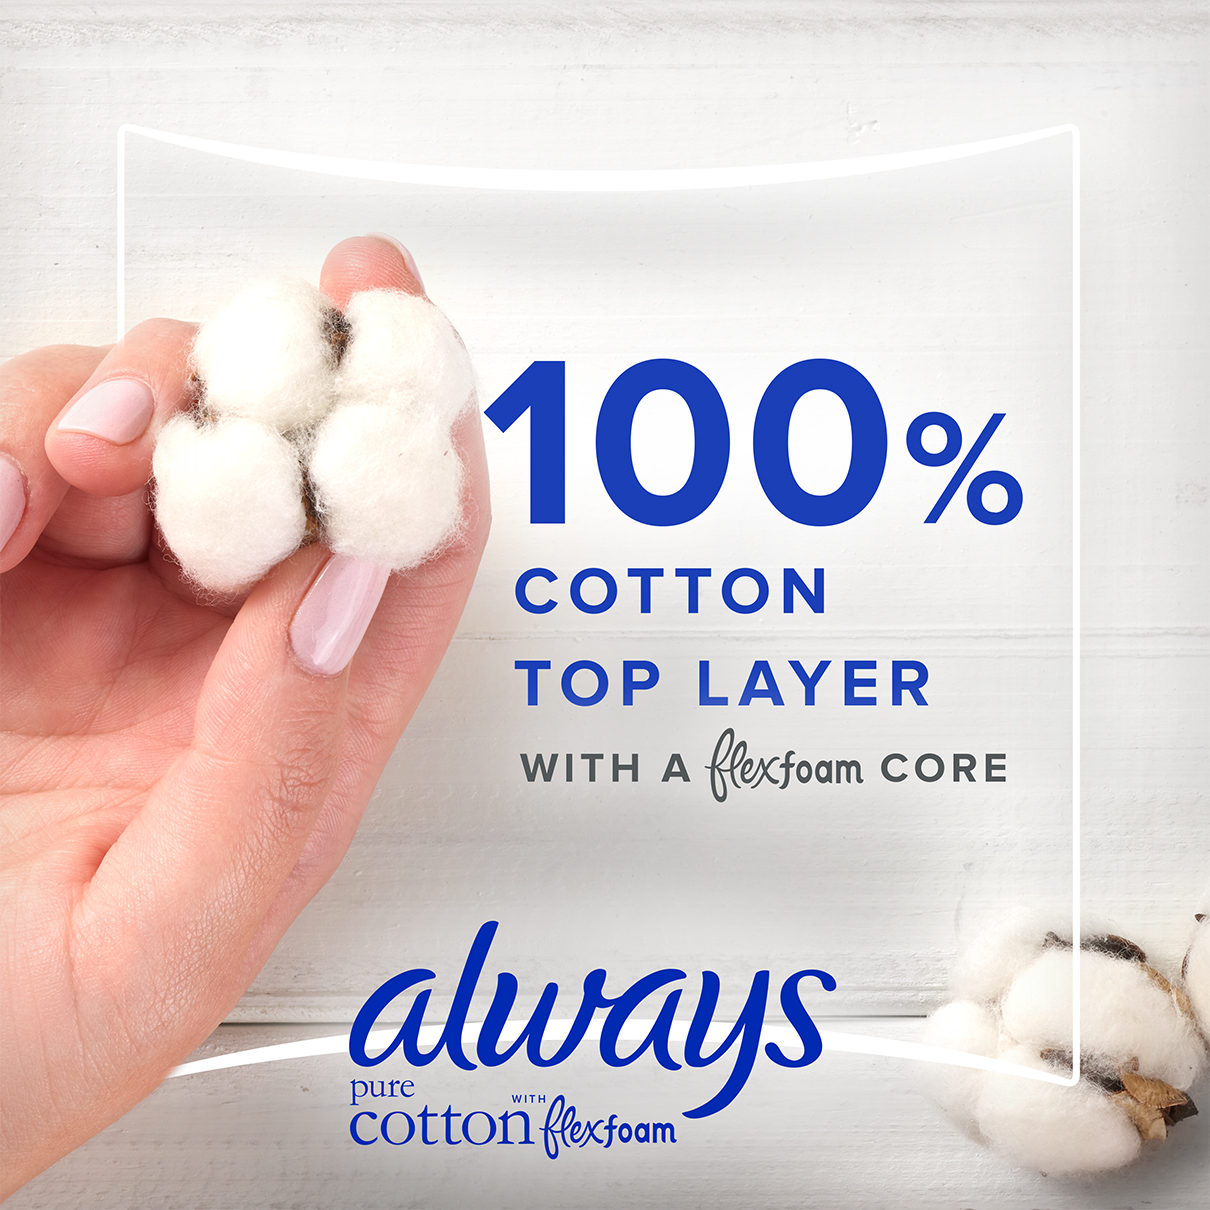 100% Cotton Top Layer With FlexFoam Core